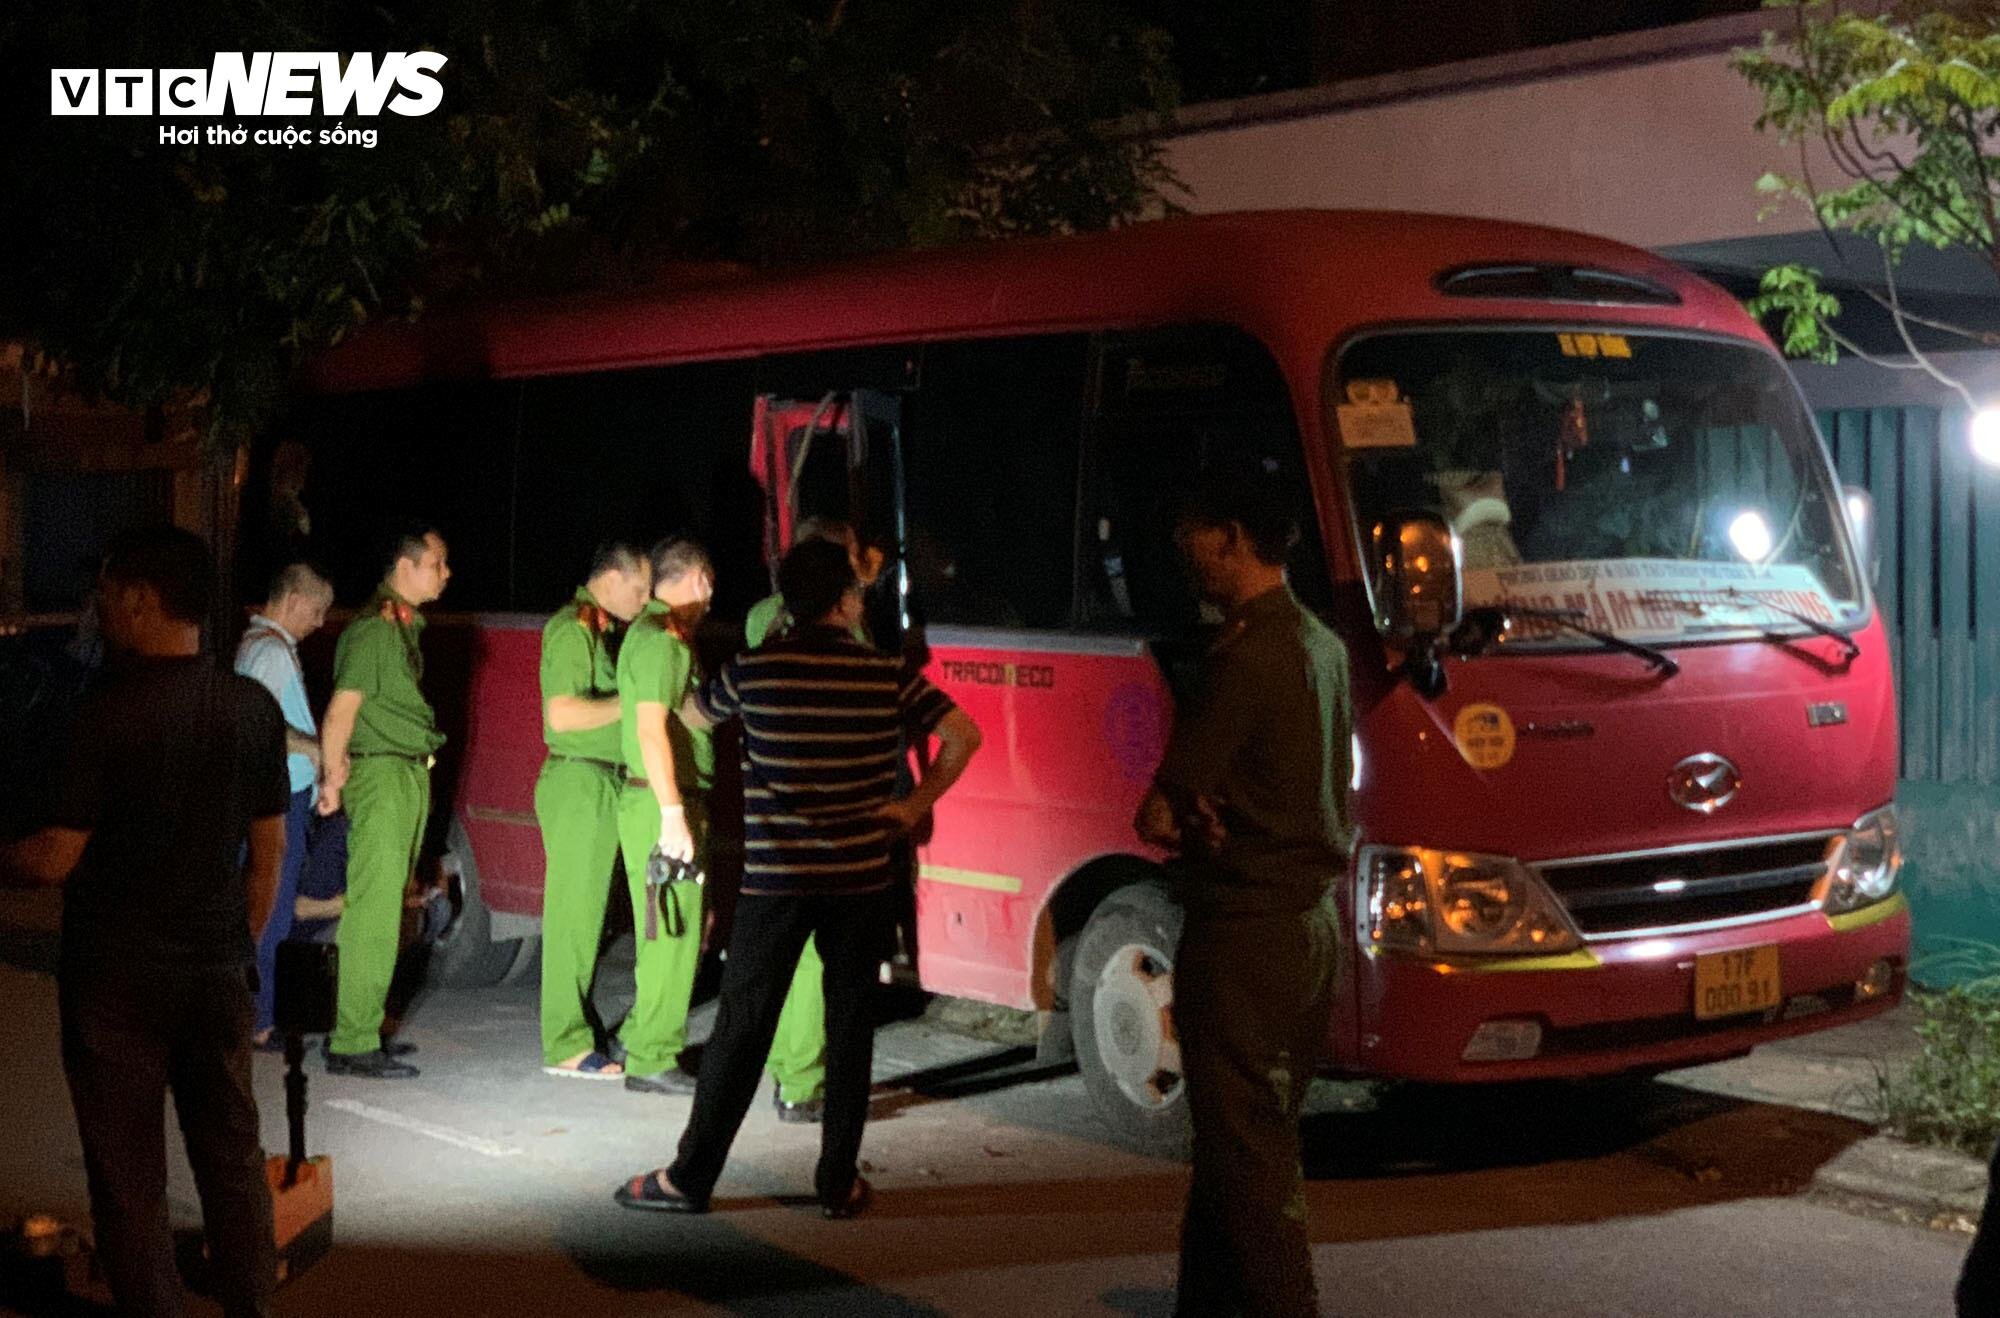 Tối 29/5, cơ quan chức năng tỉnh Thái Bình khám nghiệm chiếc xe nơi cháu bé bị bỏ quên.